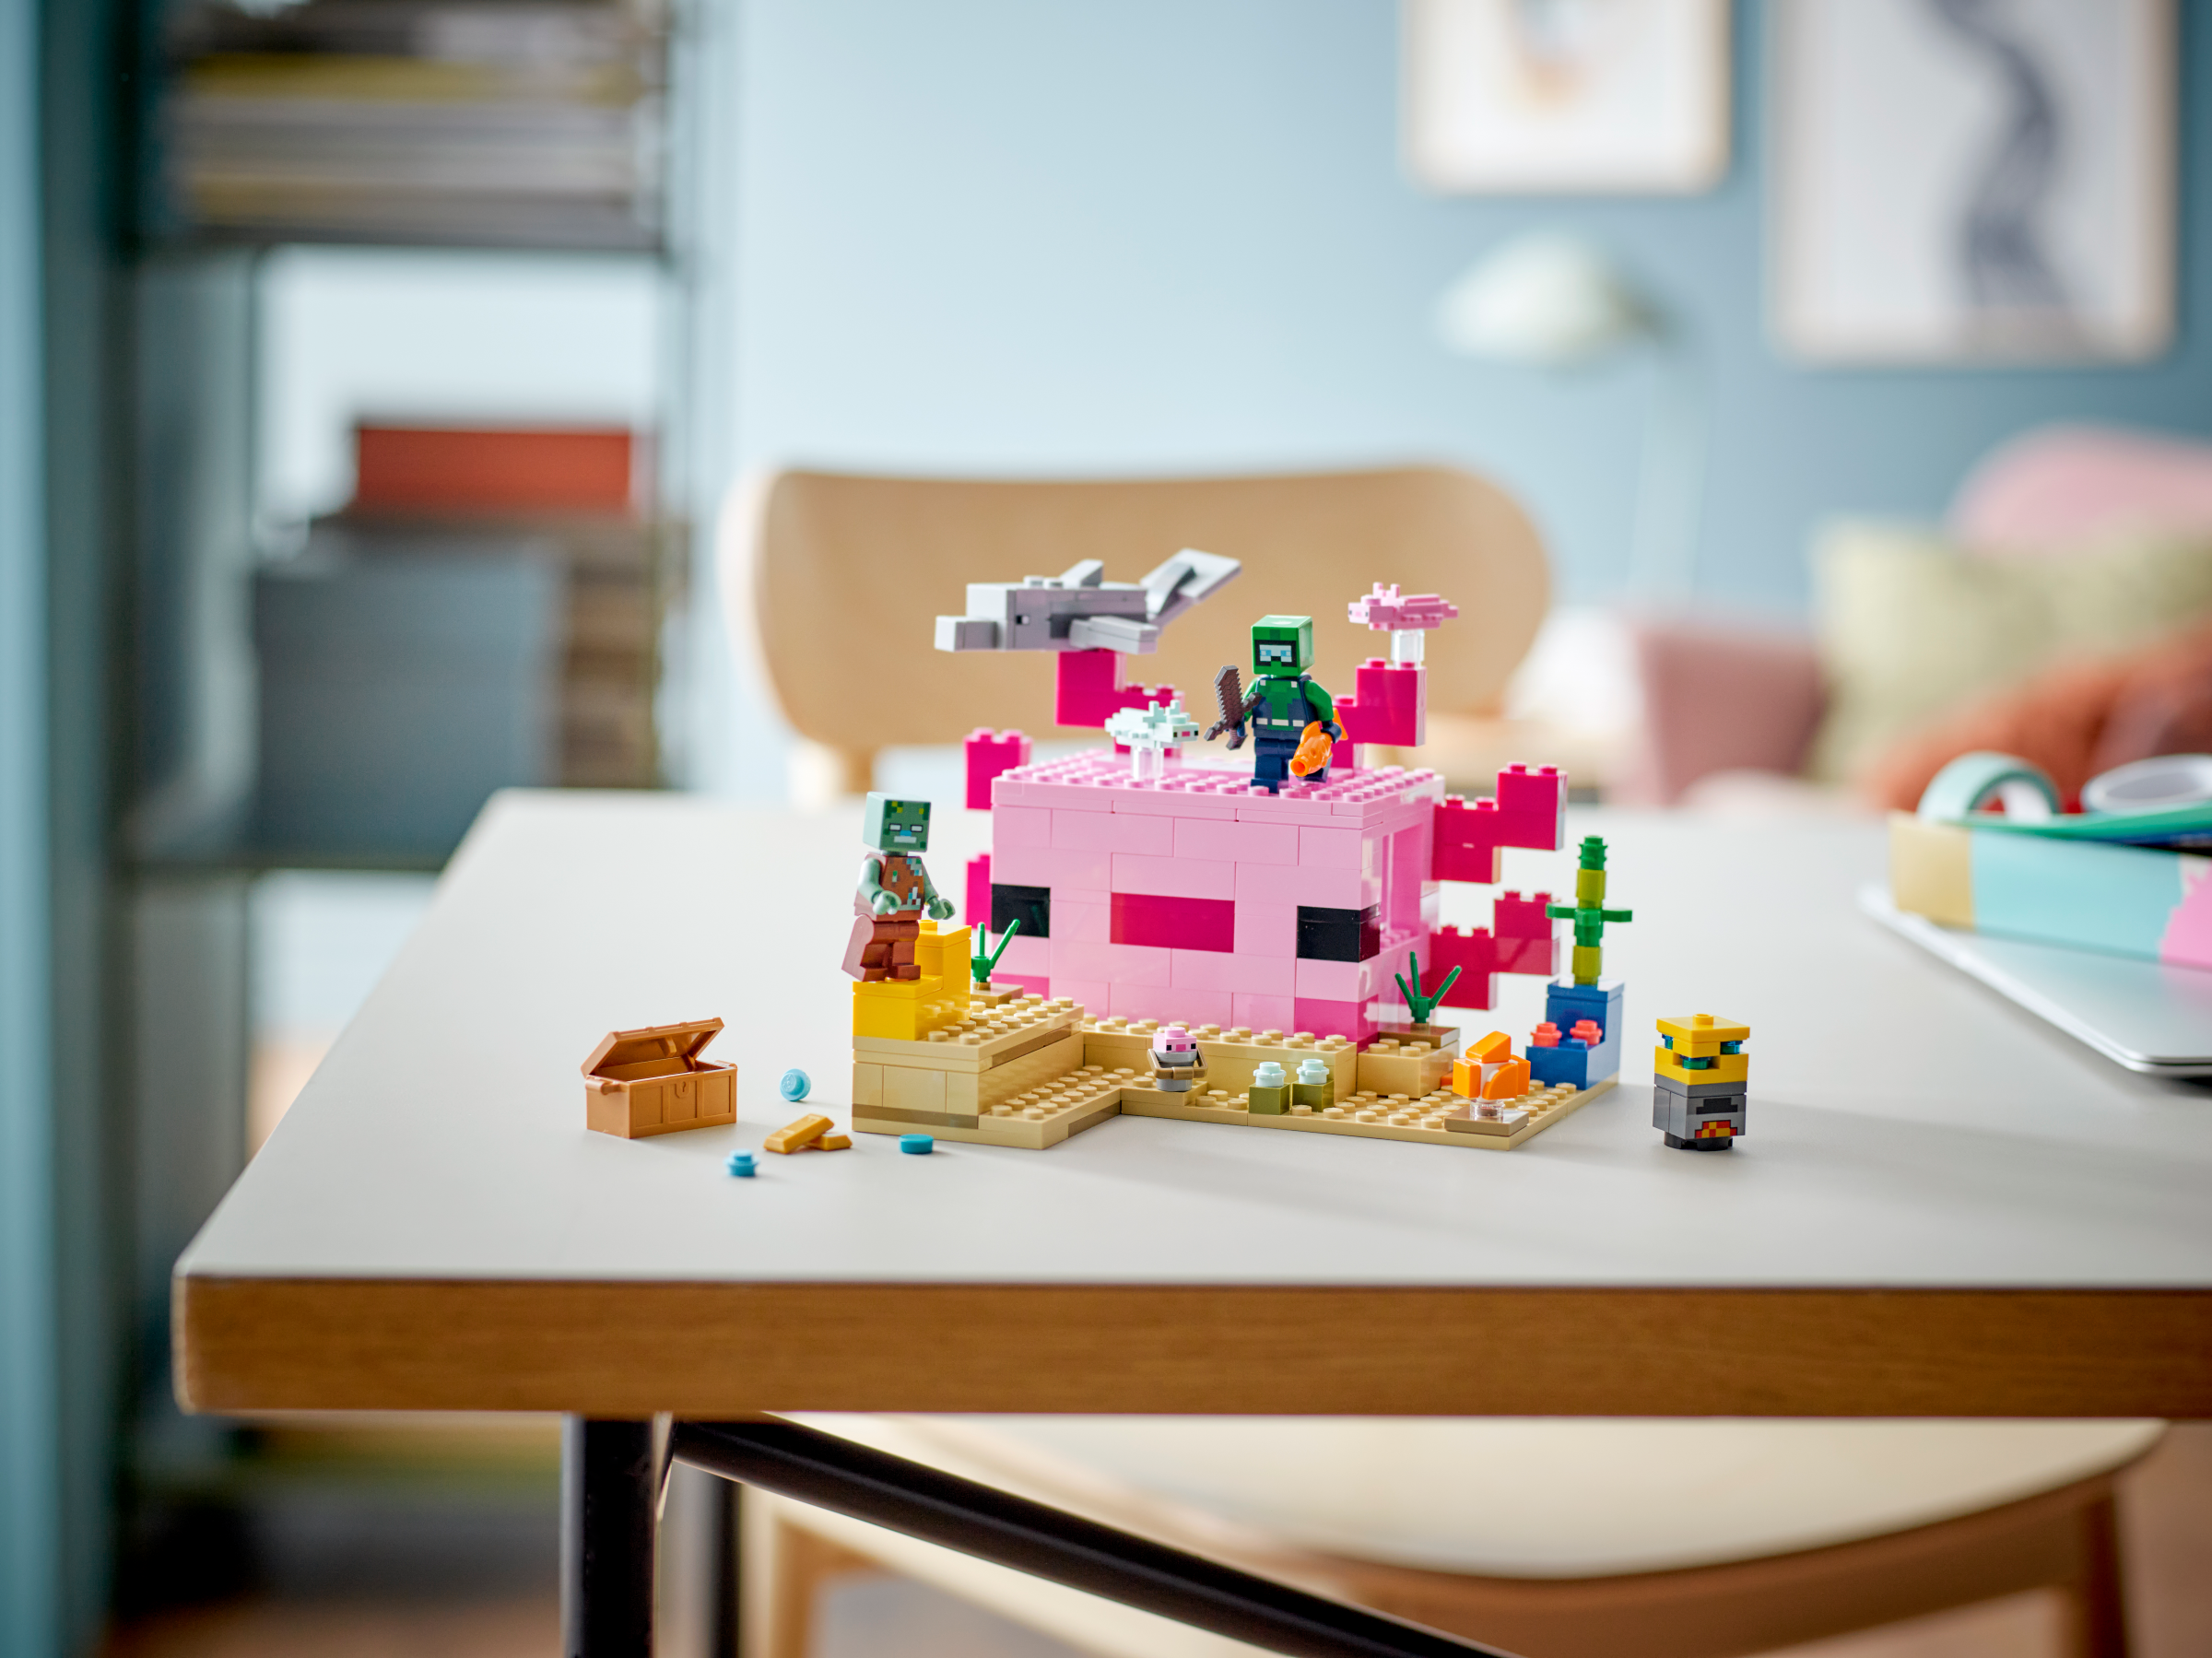 LEGO Minecraft La maison Axolotl 21247 Ensemble de jeu de construction (242  pièces) Comprend 242 pièces, 7+ ans 